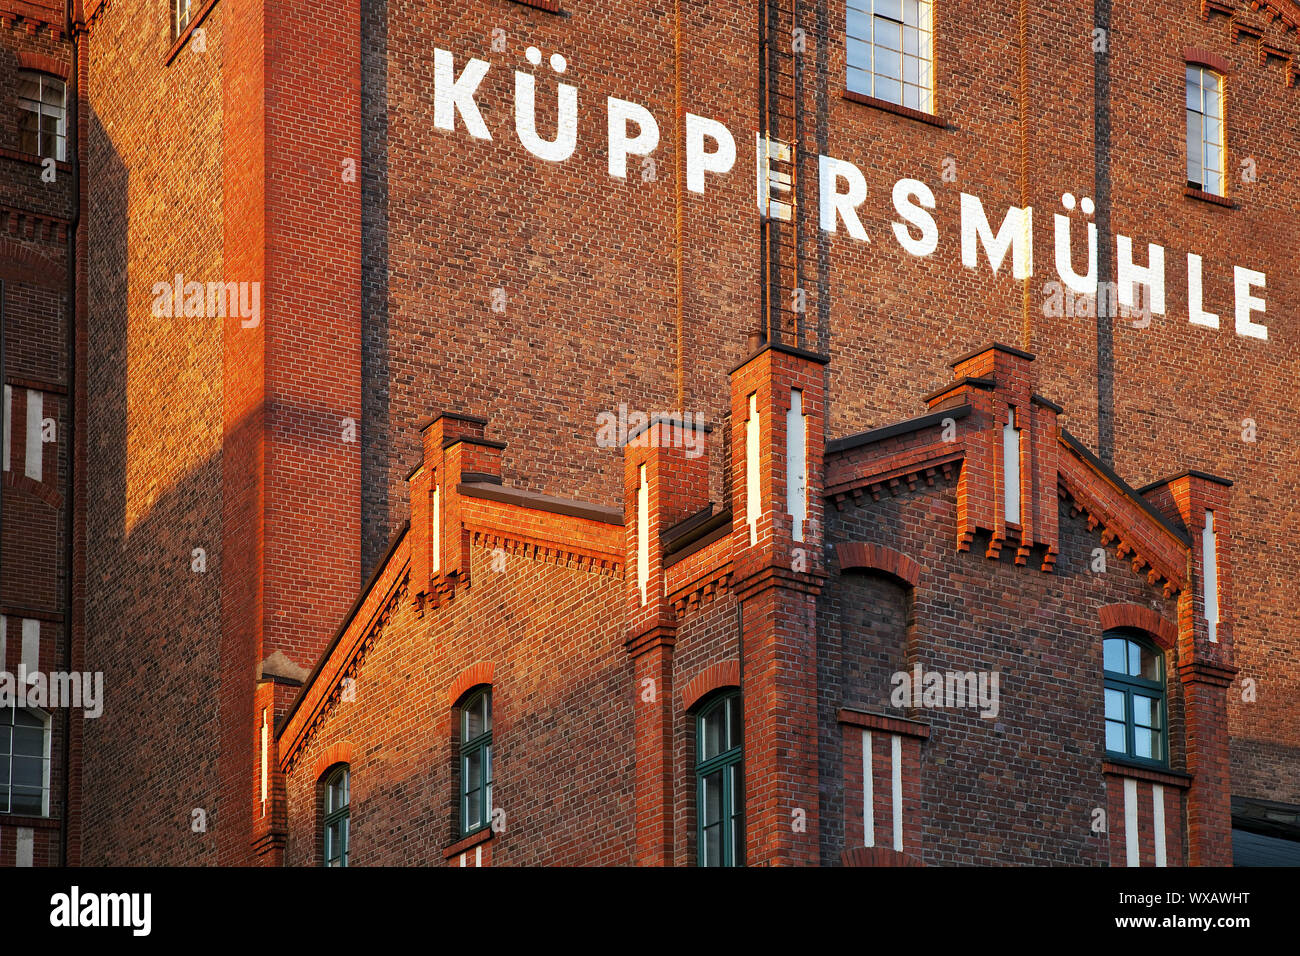 Museum Kueppersmuehle (MKM) dans le port intérieur, Duisburg, Ruhr, Allemagne, Europe Banque D'Images